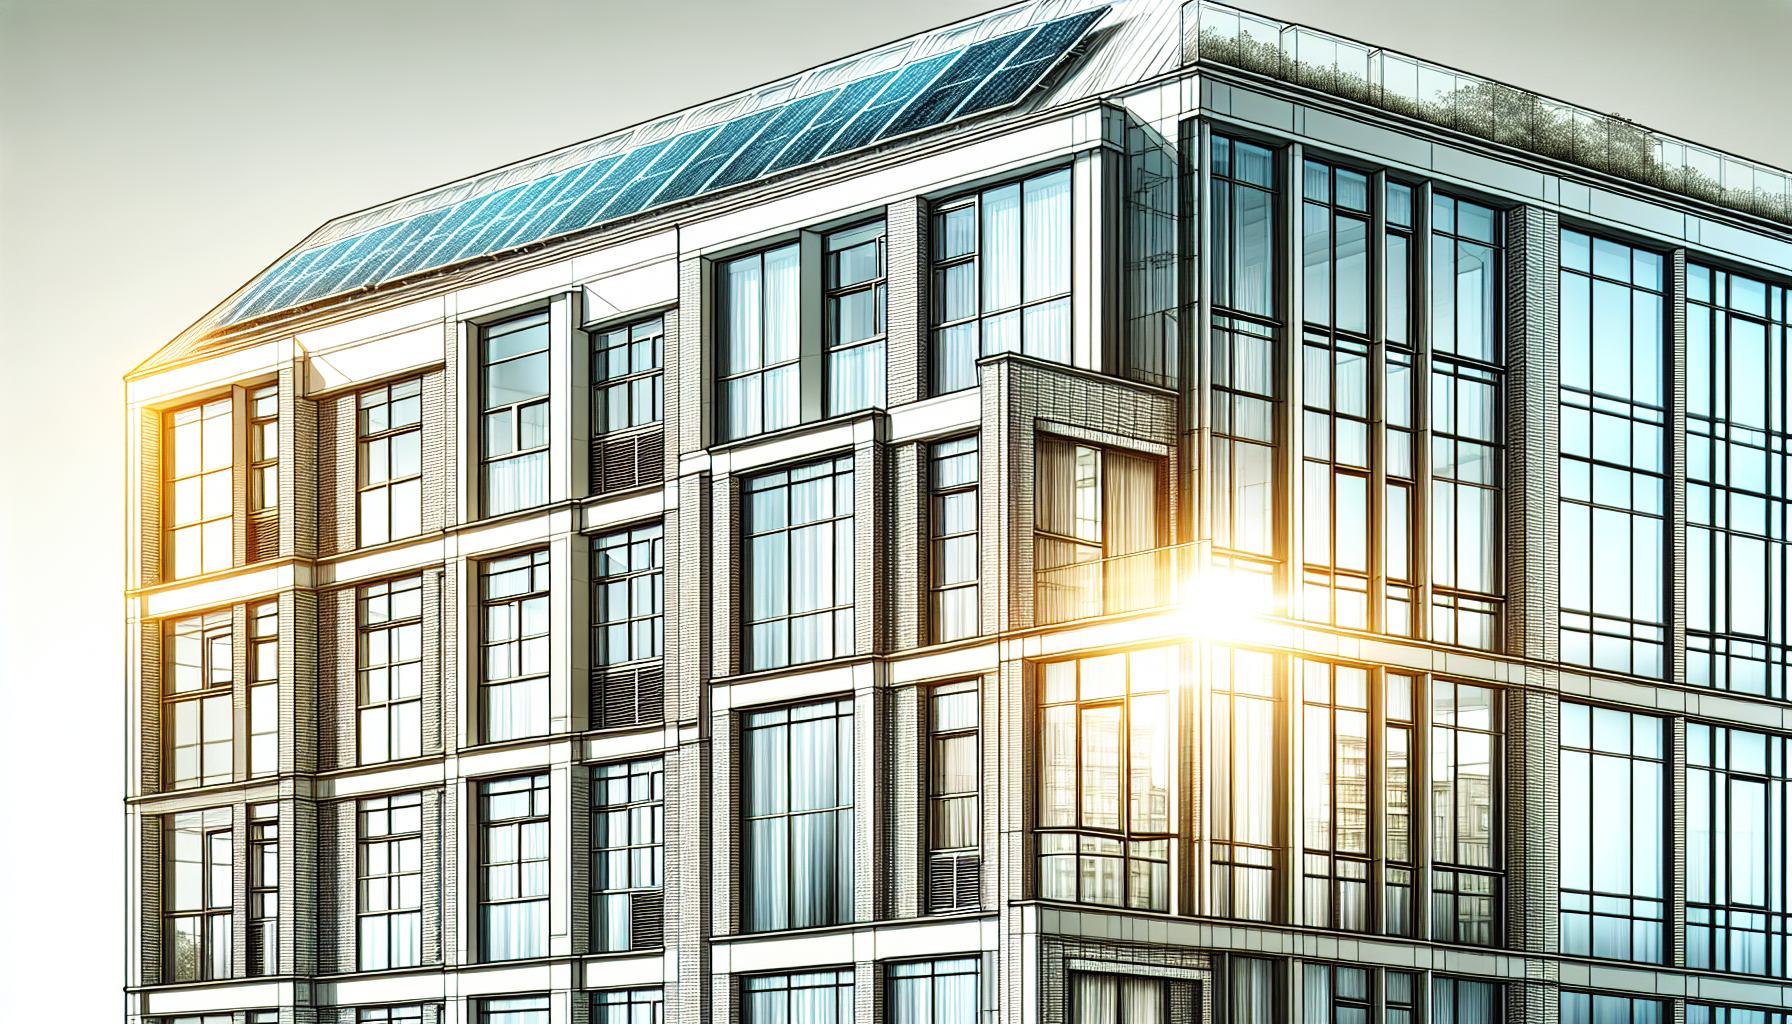 Energieeffizienz steigern: Heizung, Fenster und Dämmung. Eine energetisch sanierte Fassade mit neuen Fenstern und Dämmung.